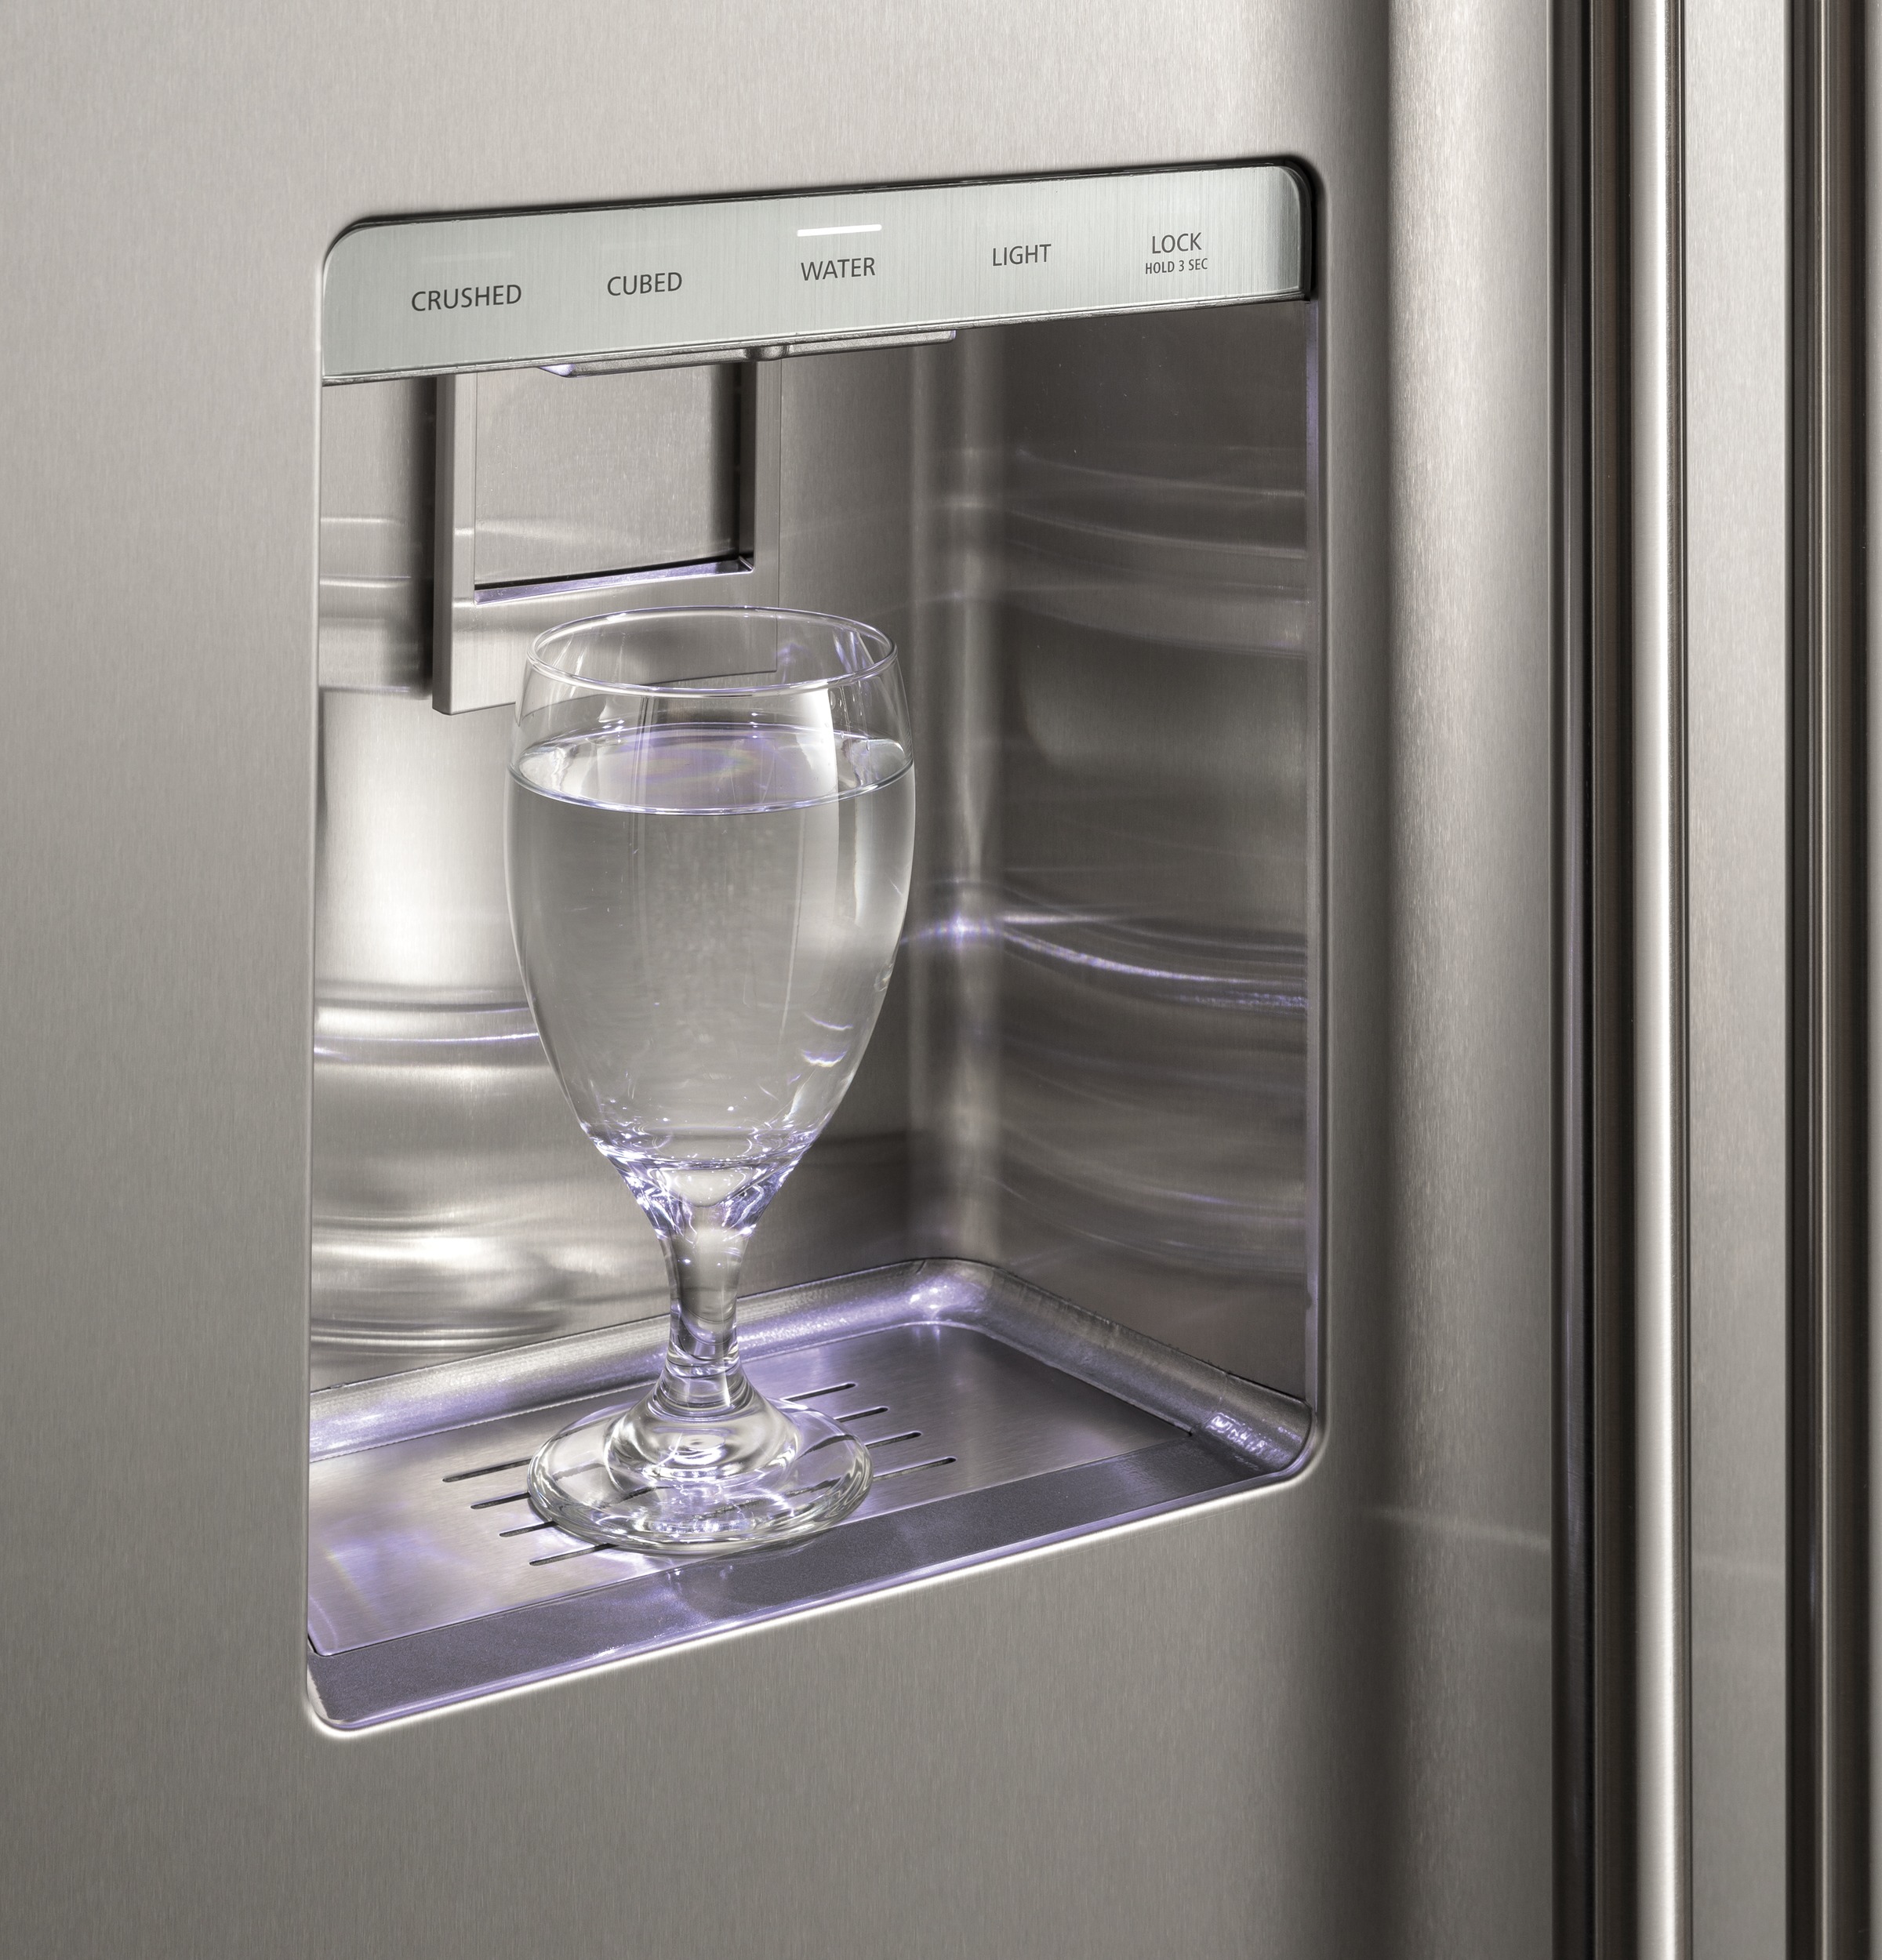 Glass full of water sits in refrigerator door dispenser